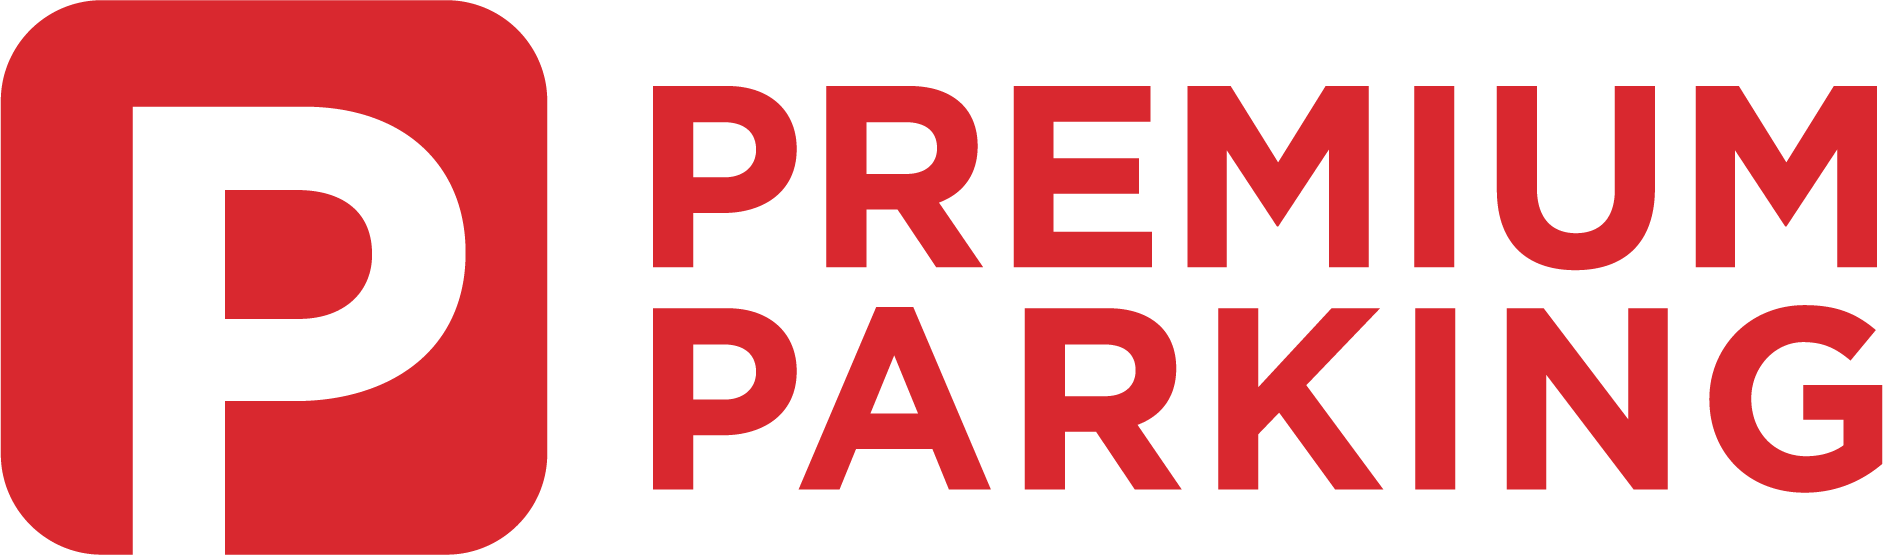 Premium Parking